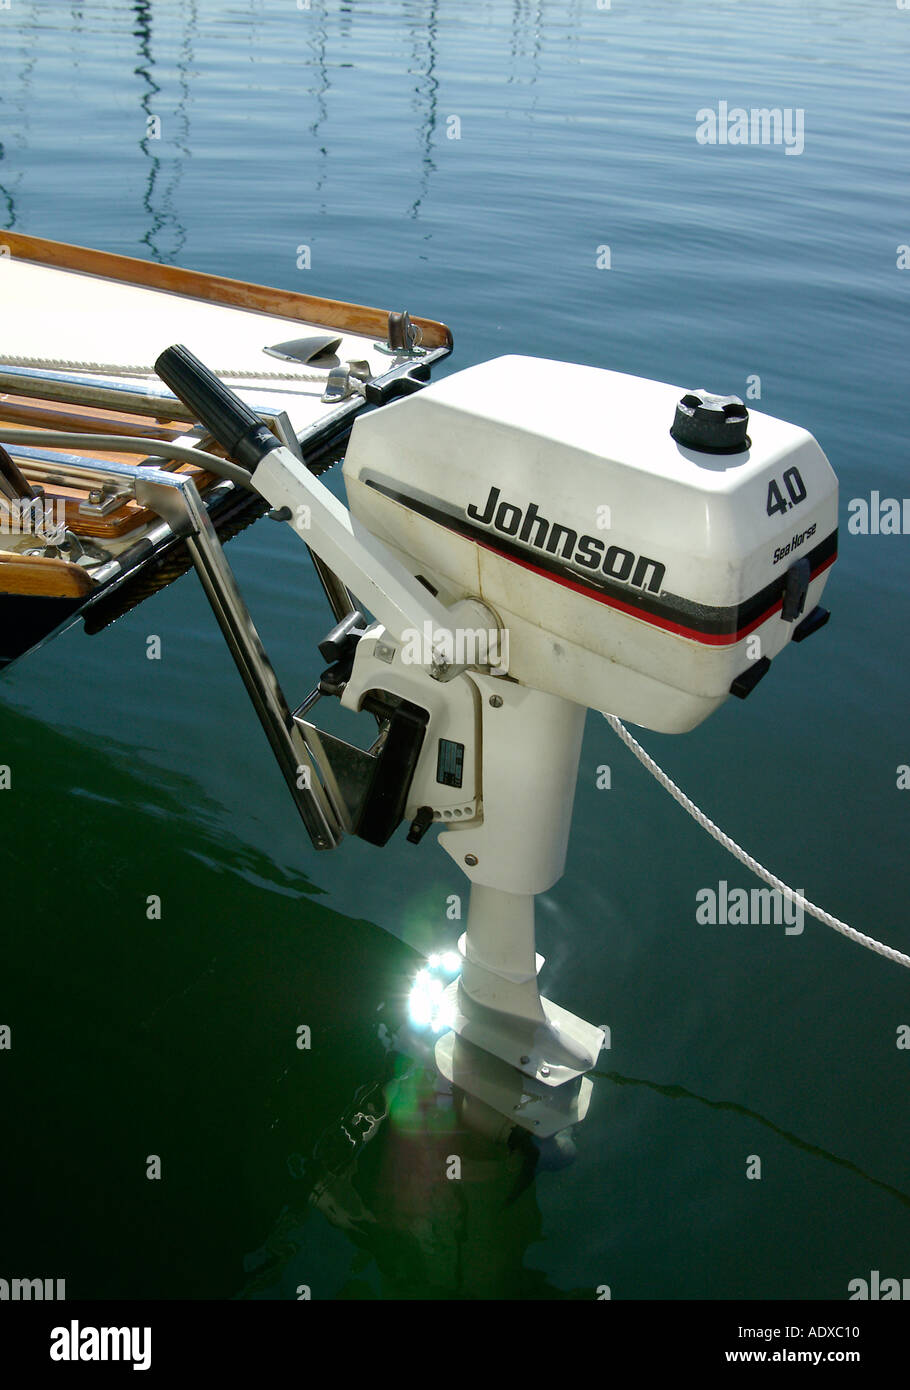 Johnson Outboard Motor Fotos e Imágenes de stock - Alamy